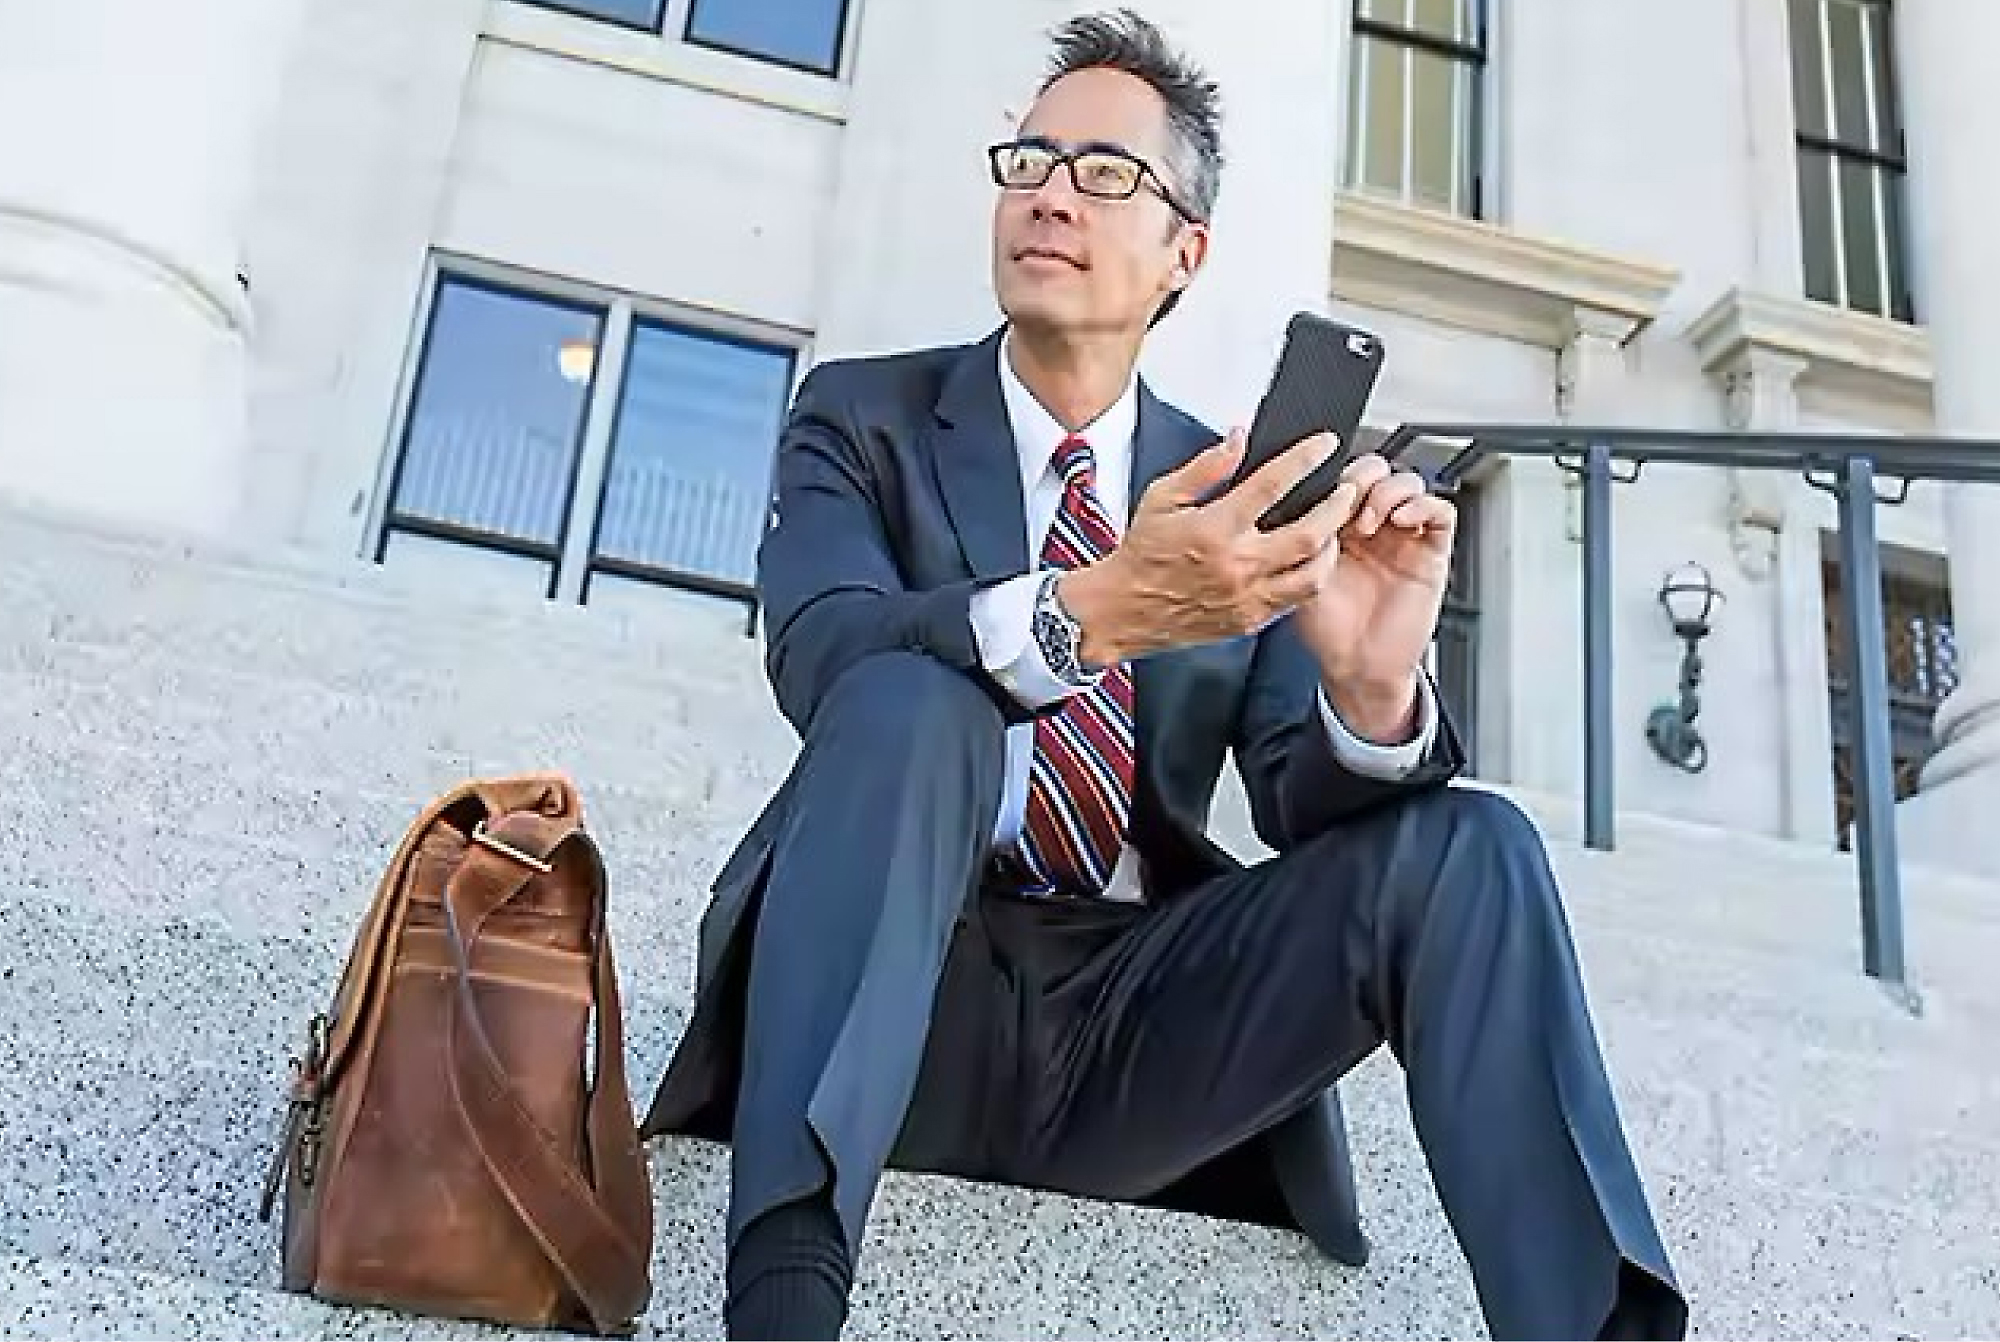 En forretningsmann i dress og briller sitter på trapper utenfor en bygning og bruker en smarttelefon med en skinnveske ved siden av seg.